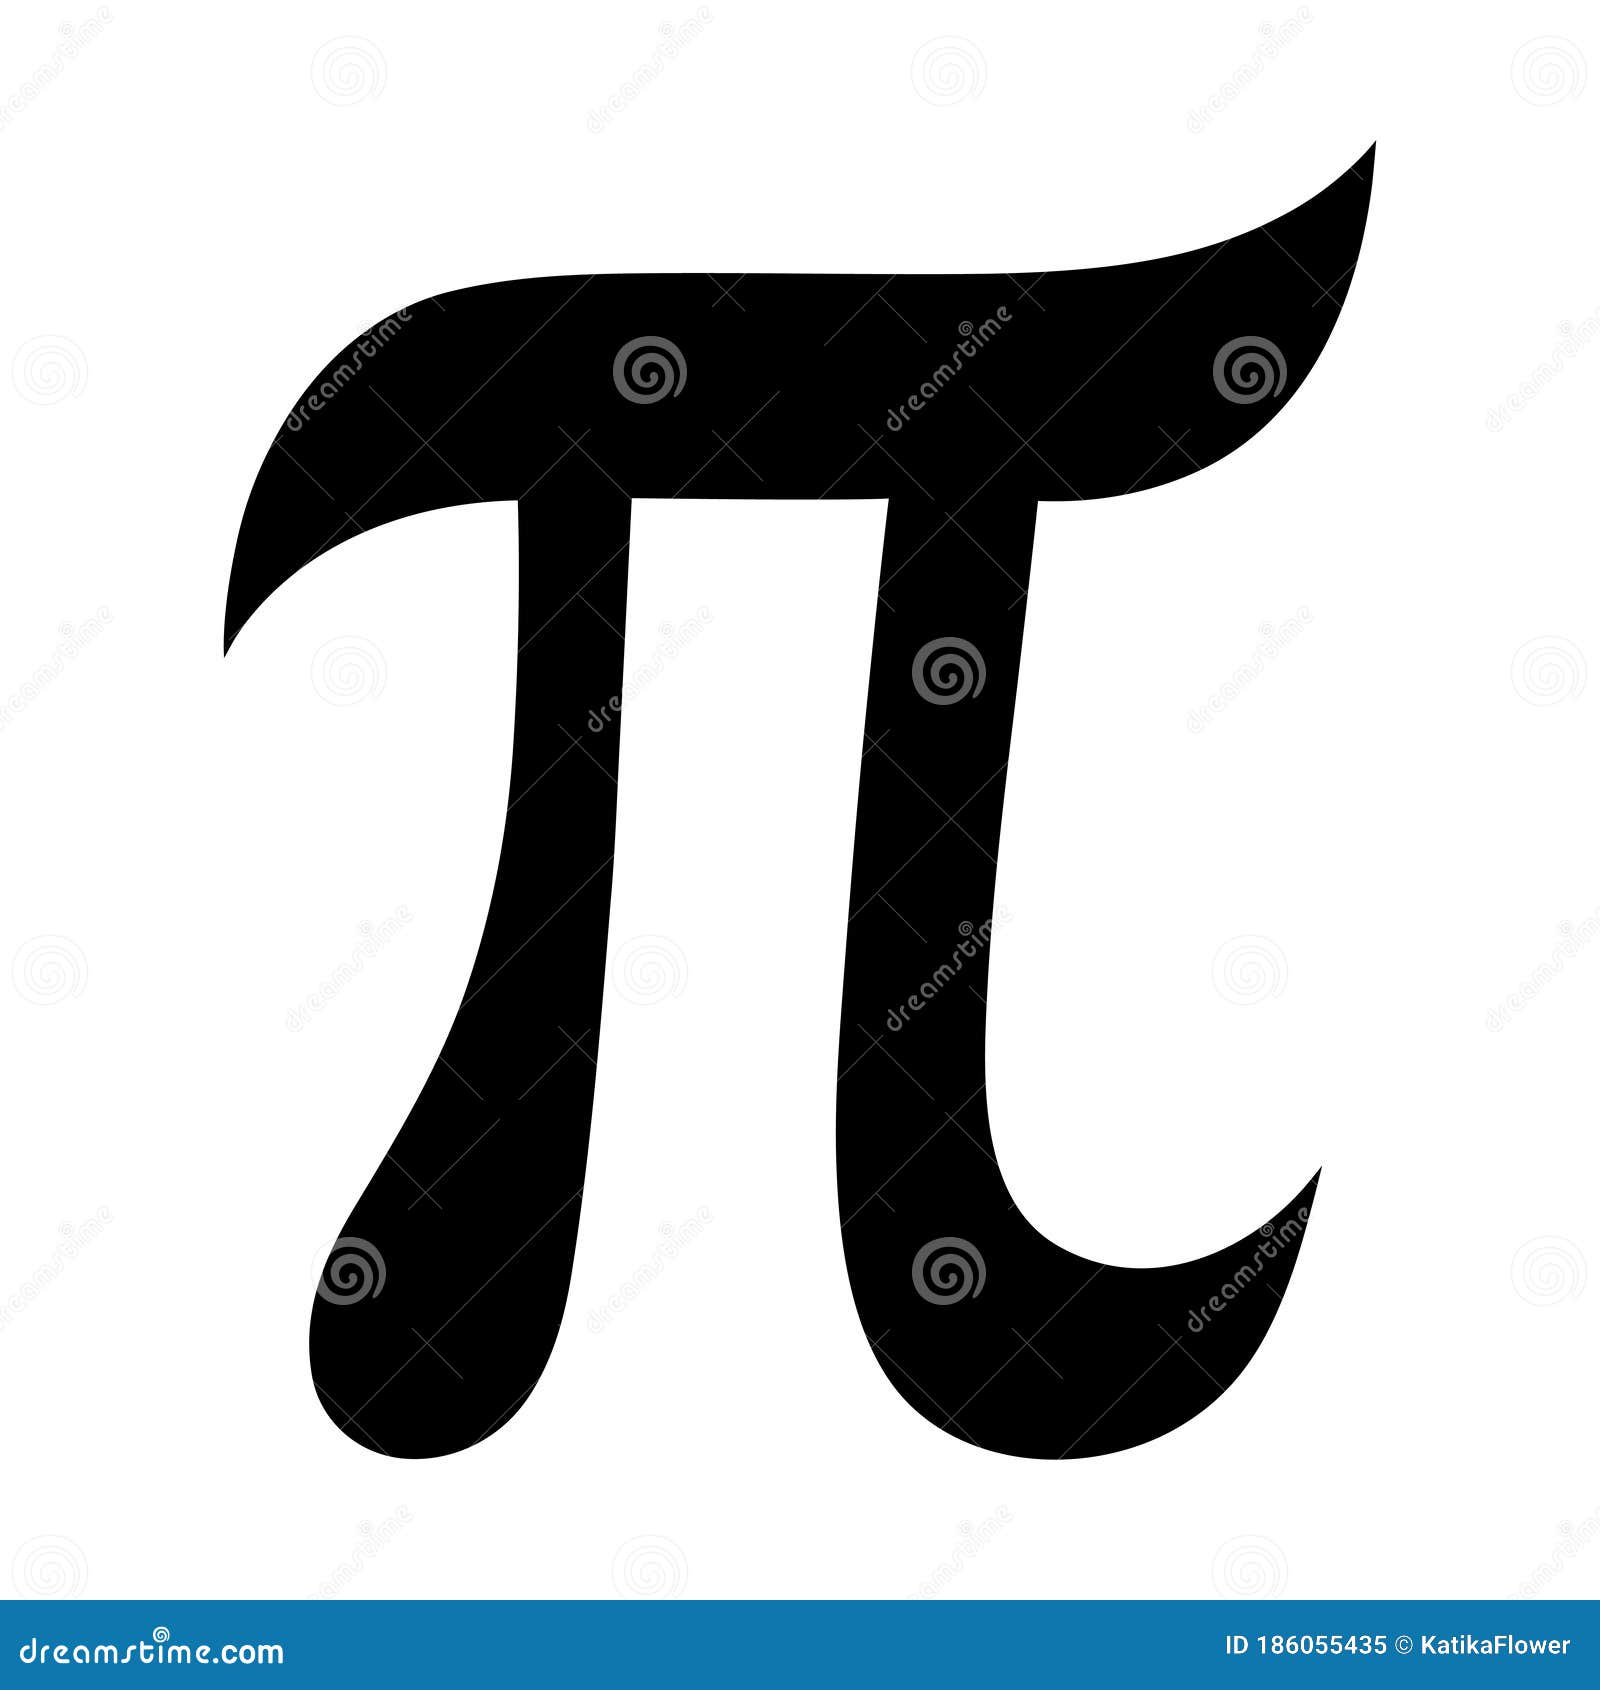 Pi Mathematics Symbol Einstein geek